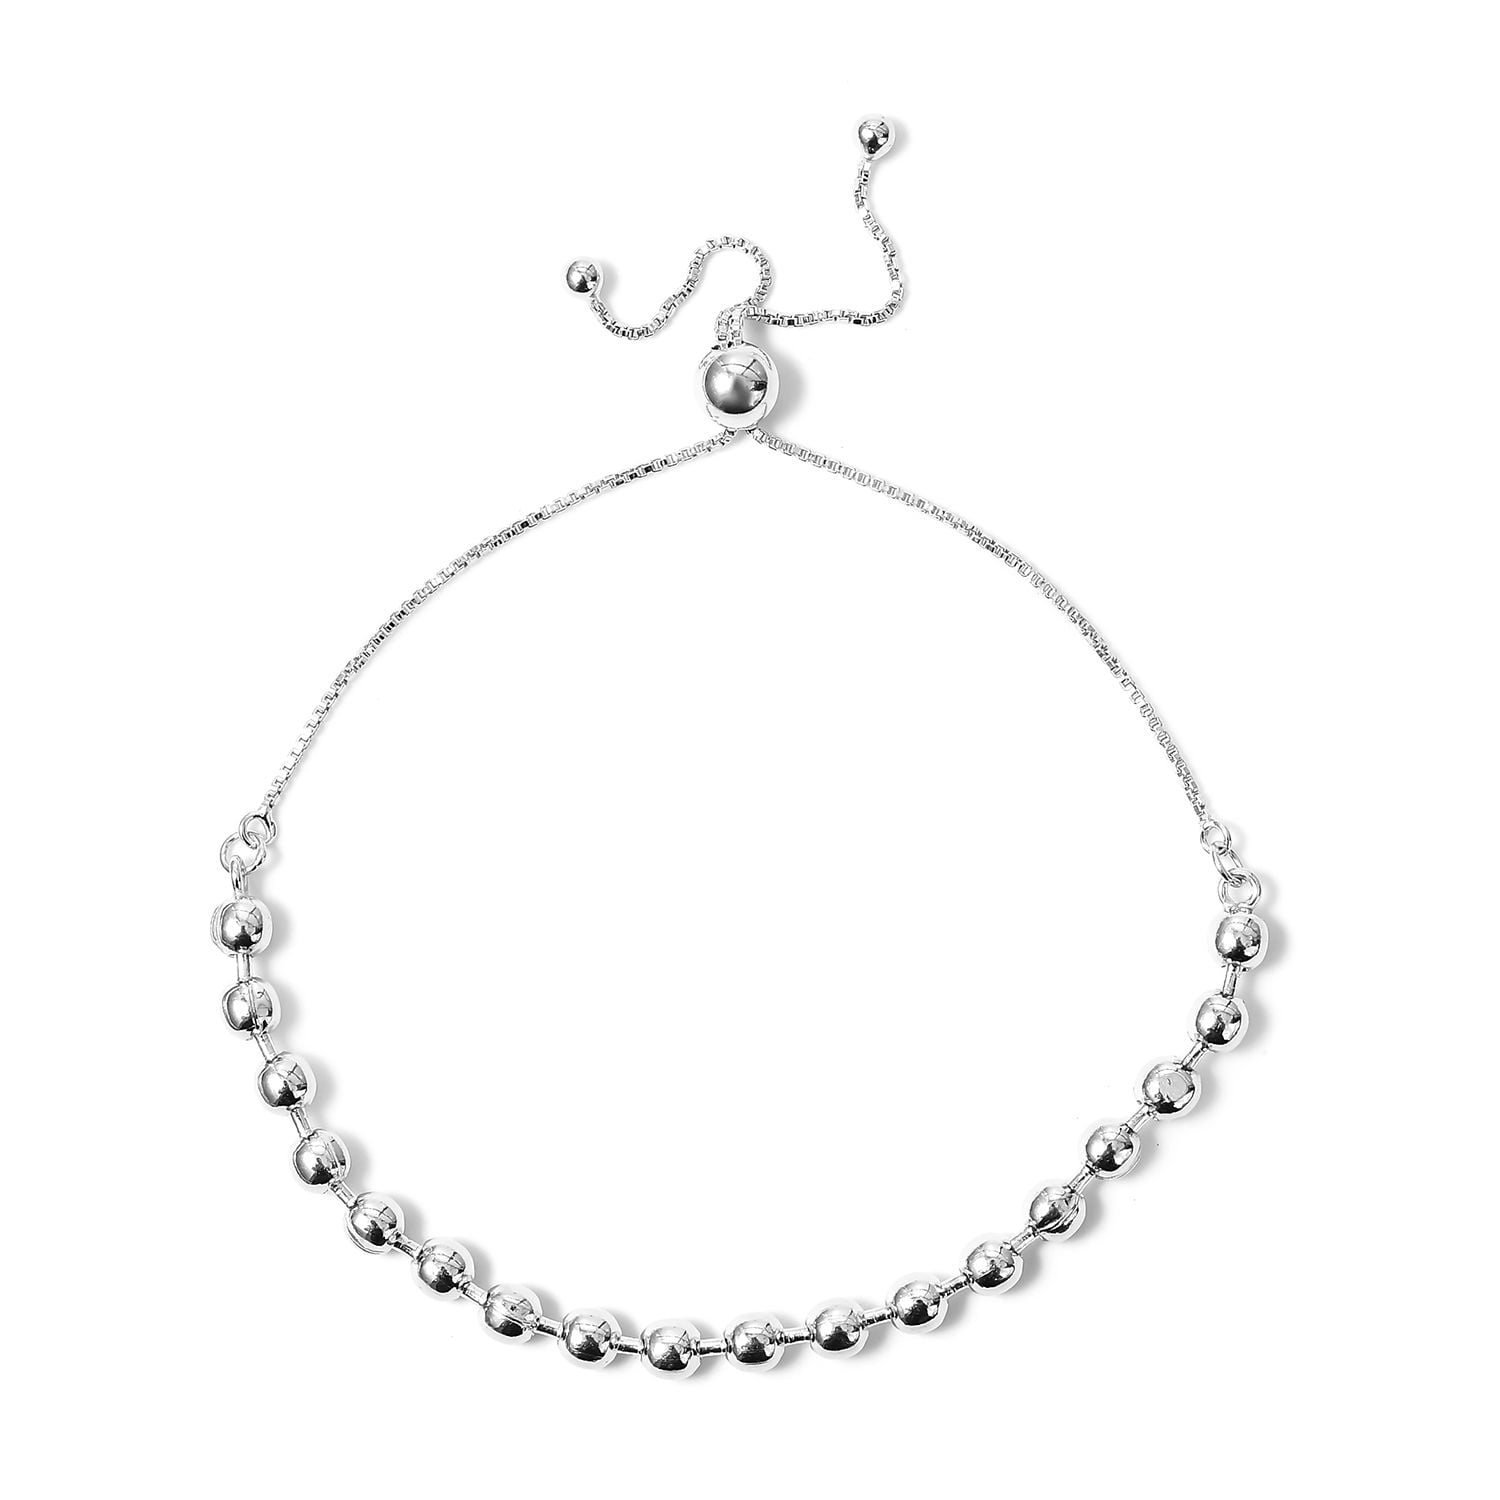 Black Silver Multicolor Three Choise Sphere Design 925K Sterling Silver Necklace Bracelet Set Gift For Her